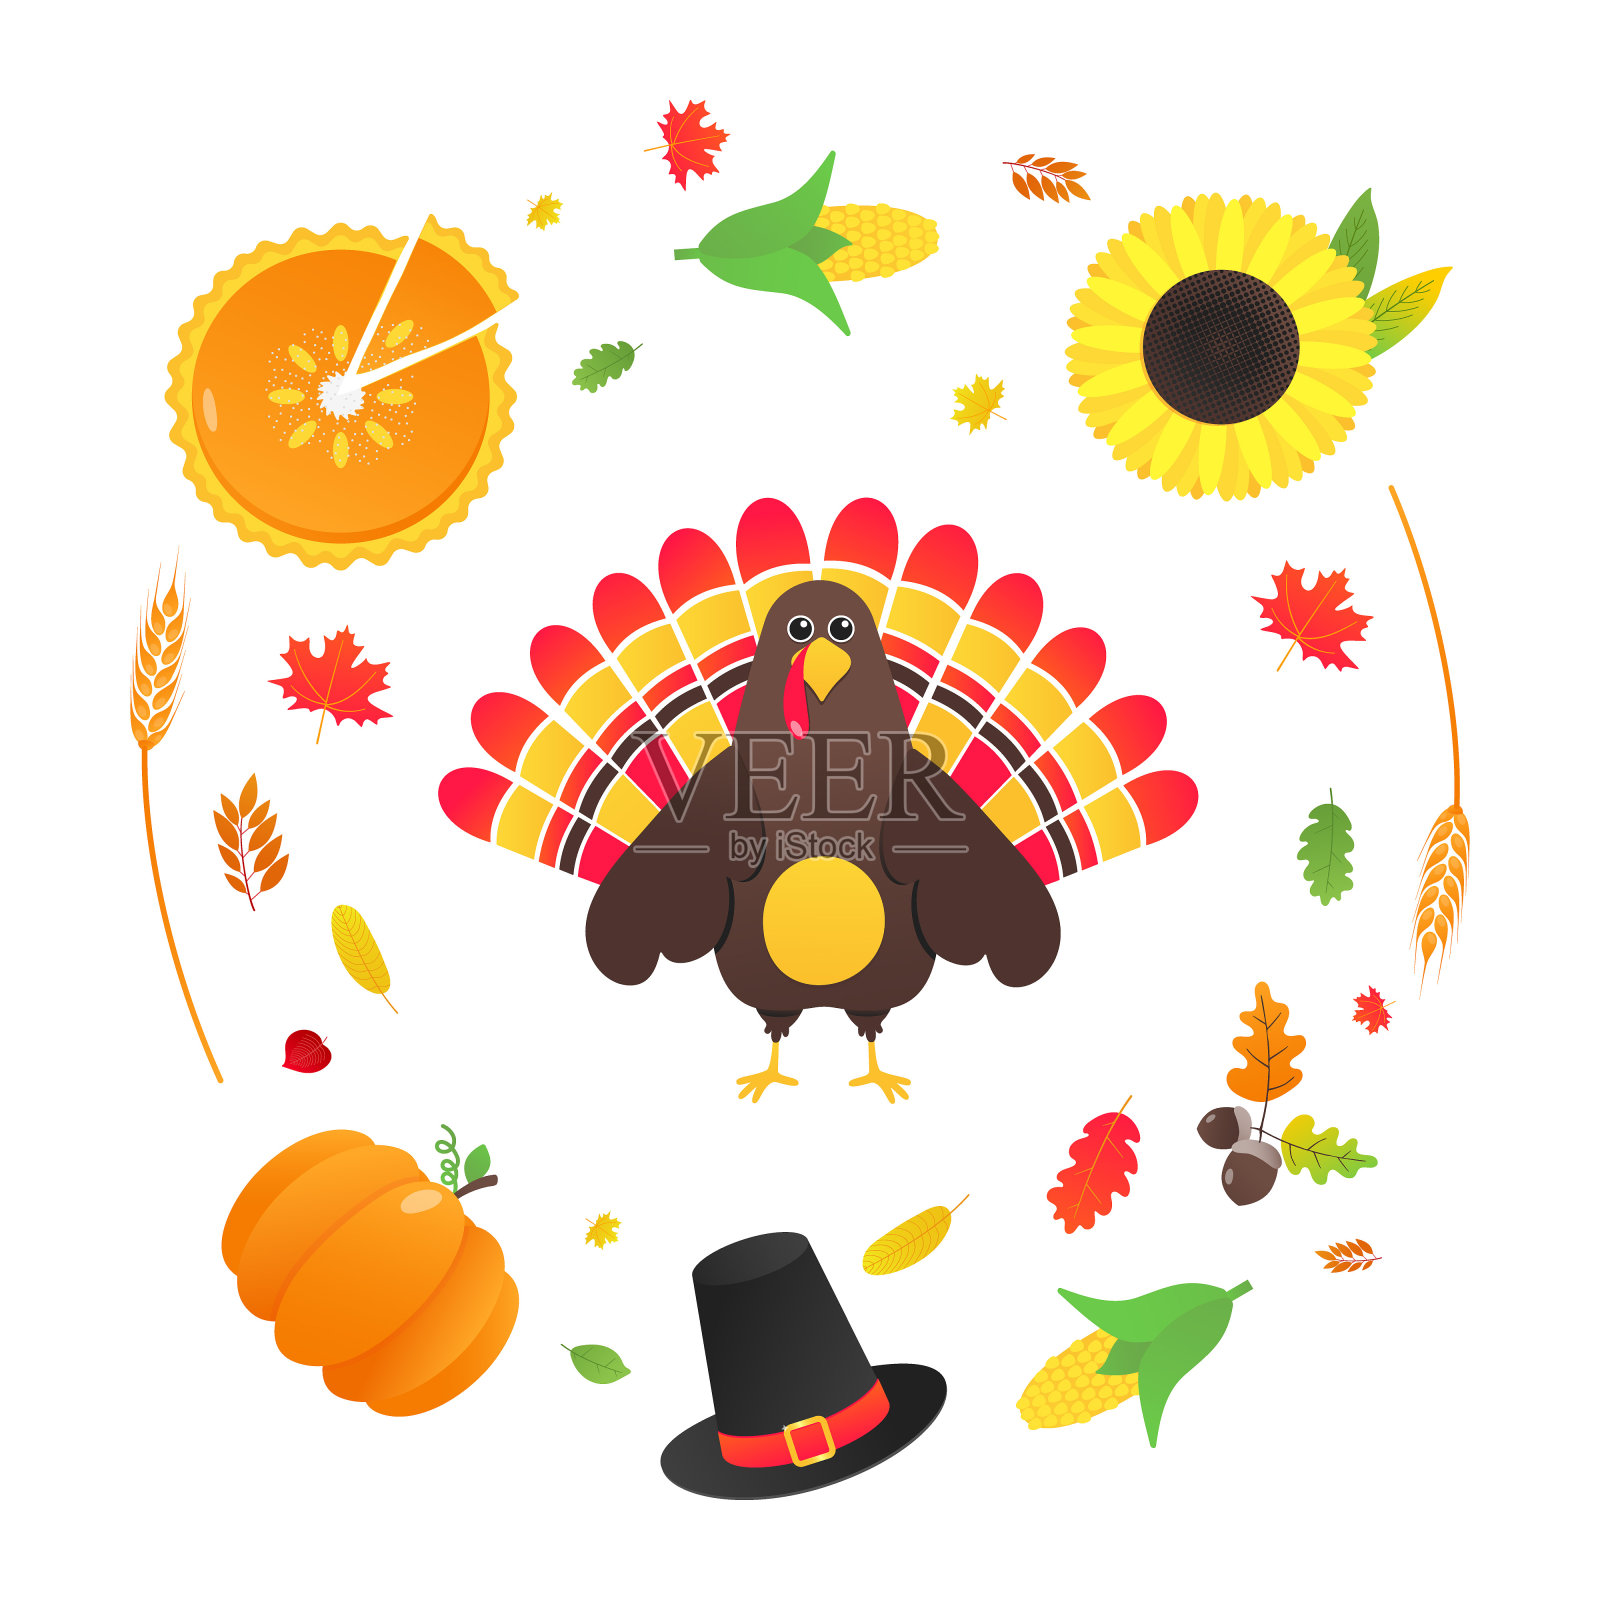 感恩节快乐平风格设计海报矢量插画与火鸡，秋叶，向日葵，玉米和南瓜。有帽子和彩色羽毛的火鸡庆祝节日。插画图片素材